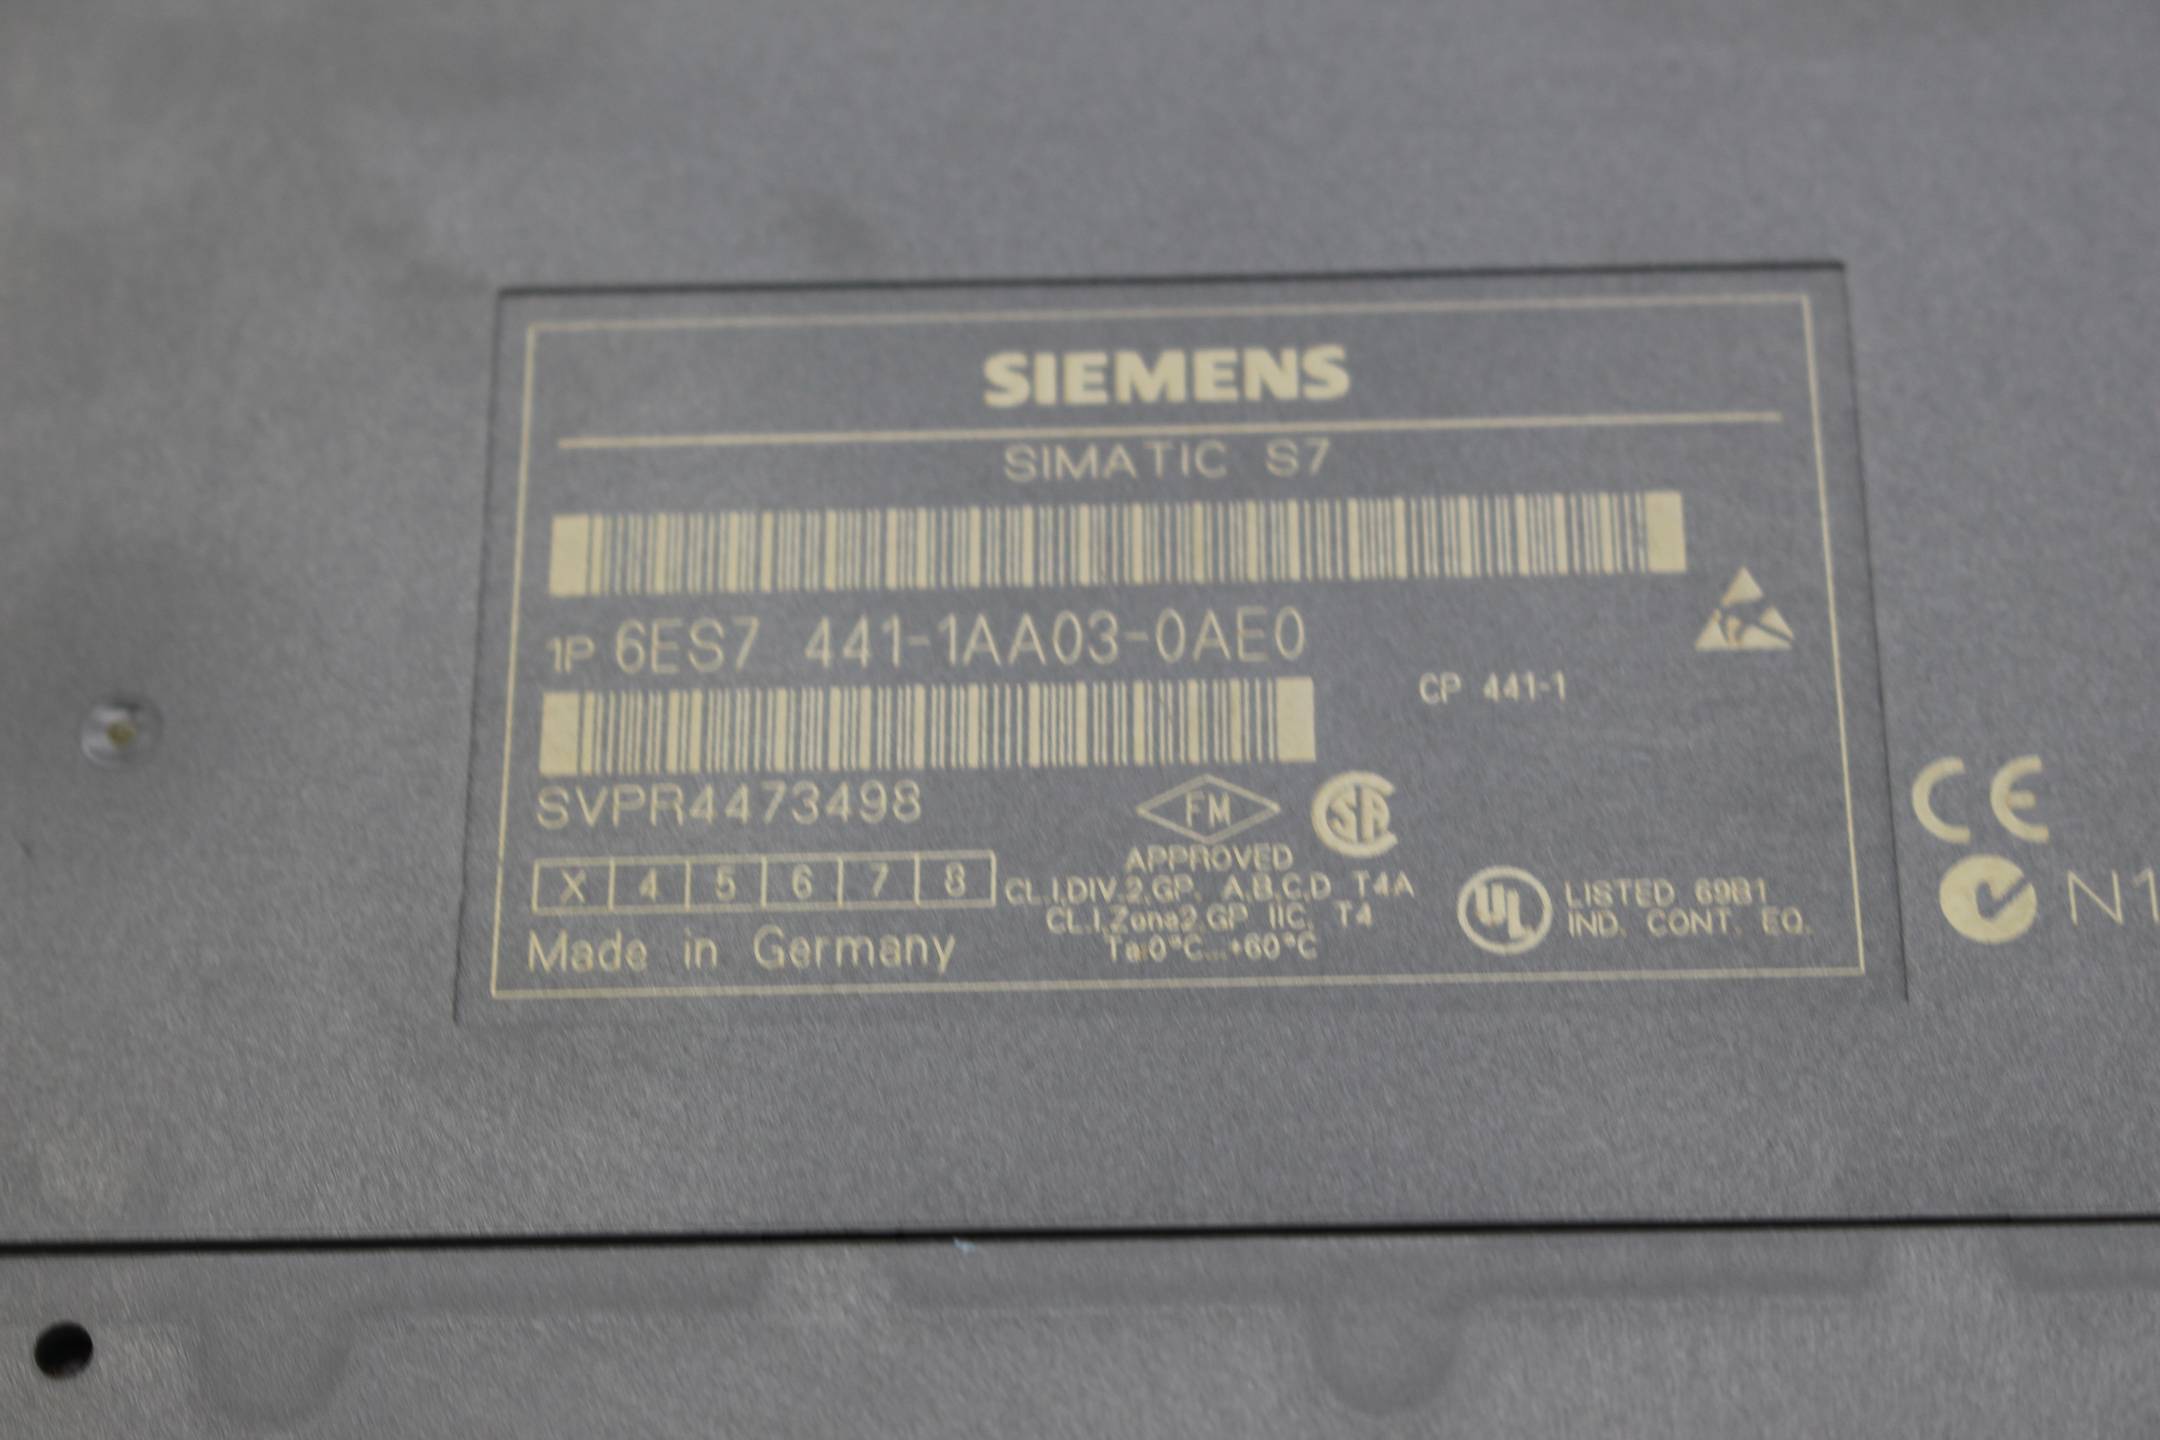 Siemens simatic S7-400 CP 441-1 6ES7 441-1AA03-0AE0 ( 6ES7441-1AA03-0AE0 ) E3